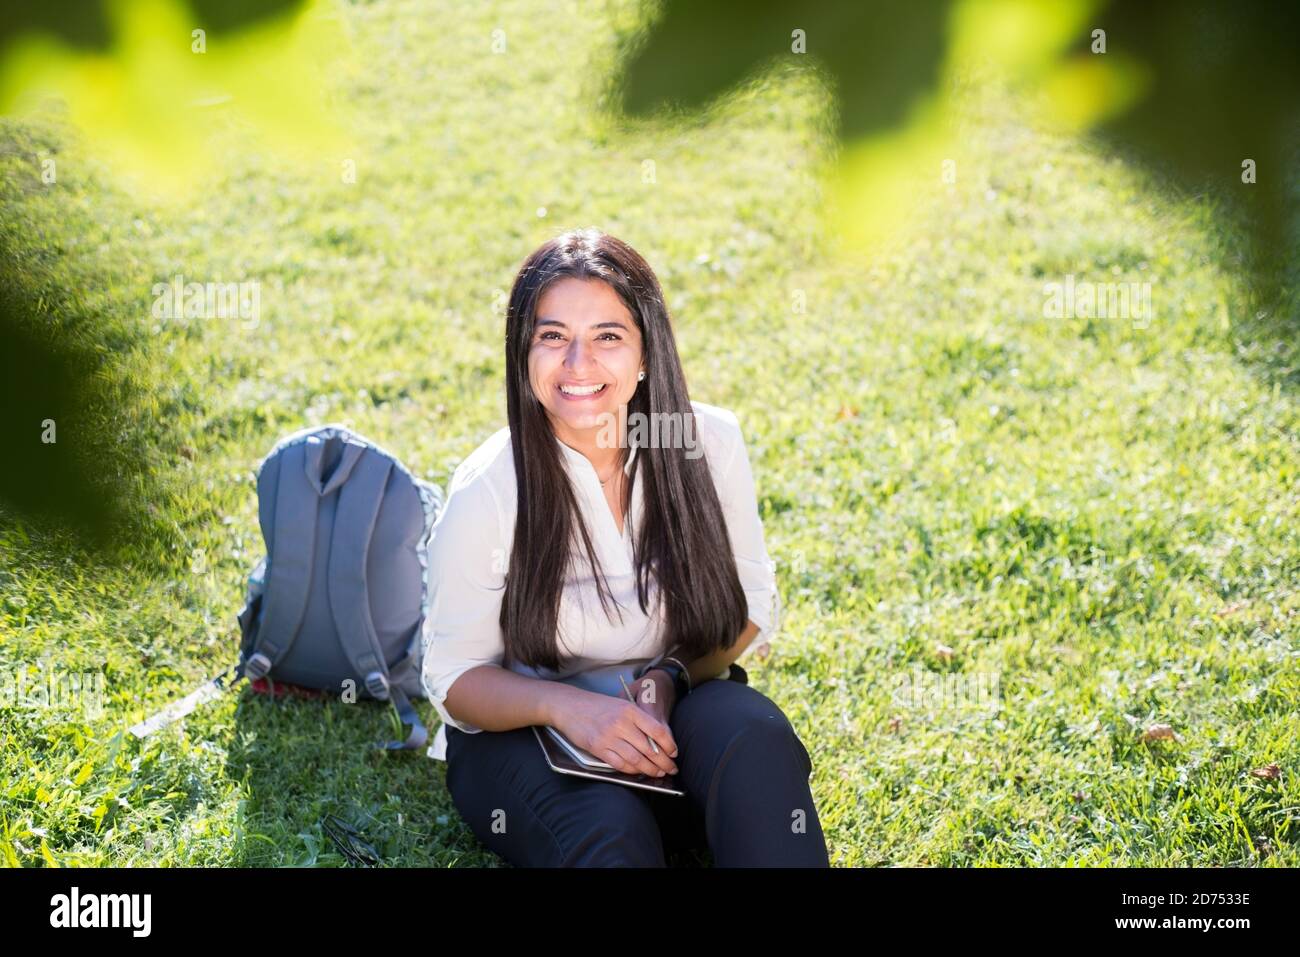 La ragazza indiana, studente, sorride, si siede sull'erba verde, con uno zaino e un blocco note, scrive Foto Stock